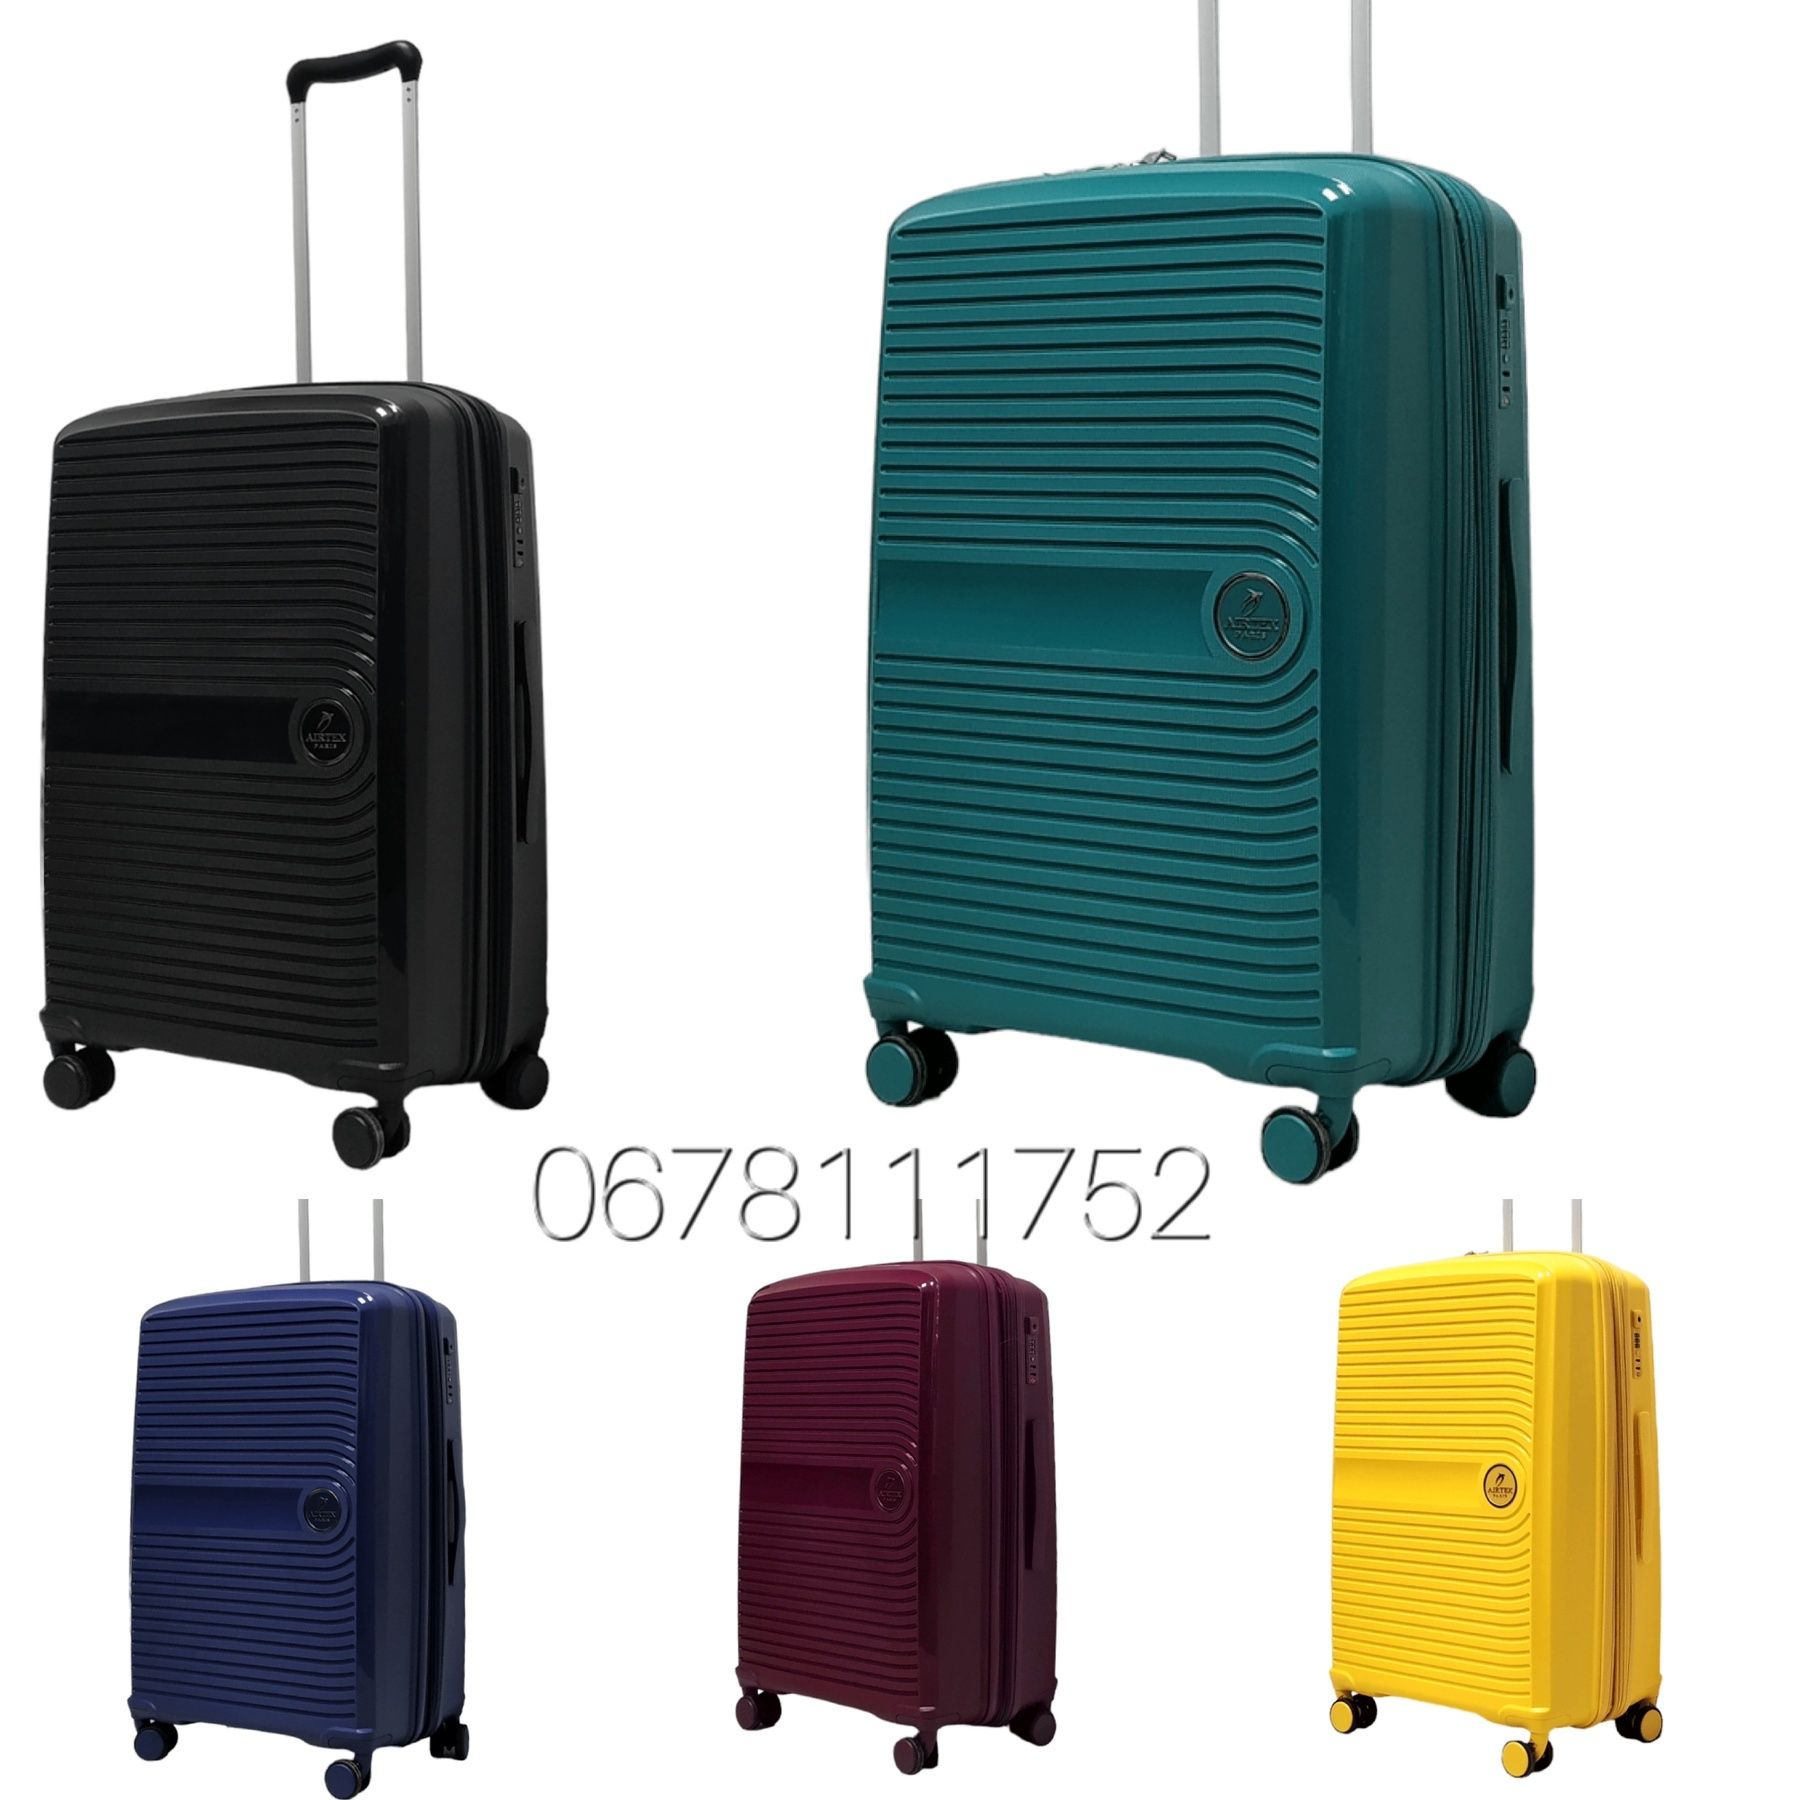 AIRTEX 223 Франція 100% поліпропилен валізи чемоданы сумки на колесах